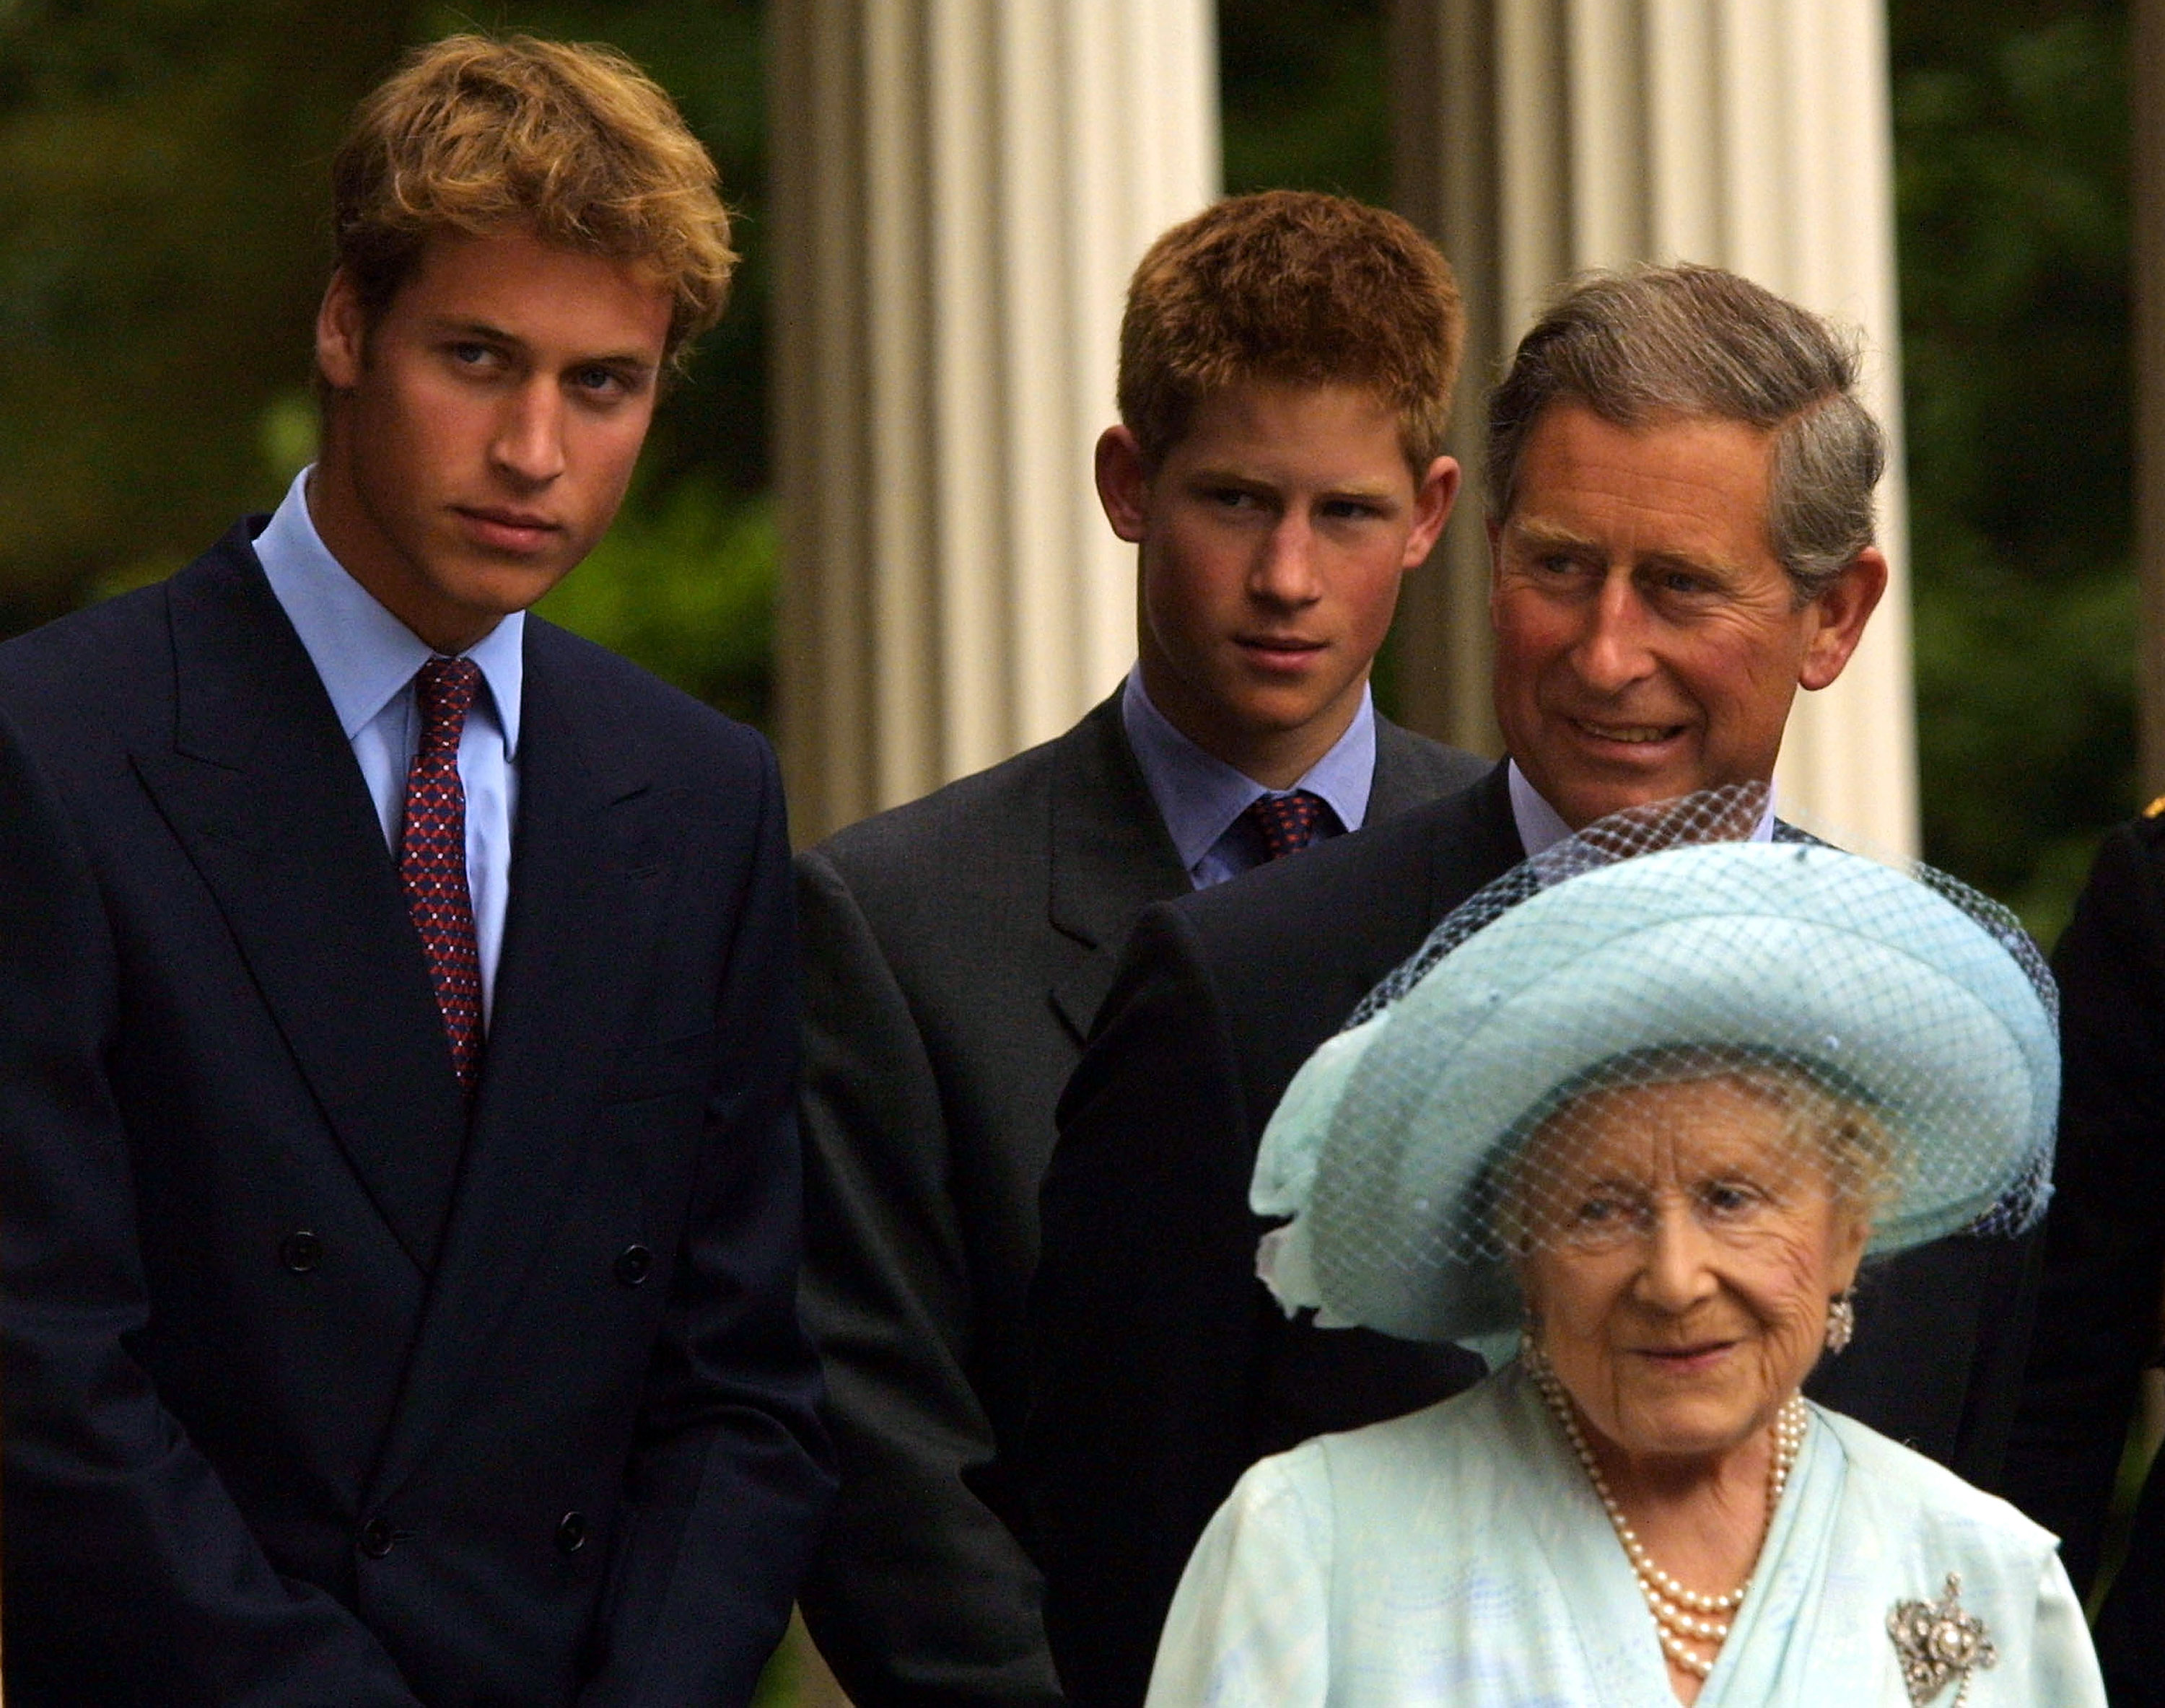 Le prince William, le prince Harry, le roi Charles III et la reine mère, Elizabeth Bowes-Lyon, lors des célébrations de son 101e anniversaire à Londres, en Angleterre, le 4 août 2001 | Source : Getty Images